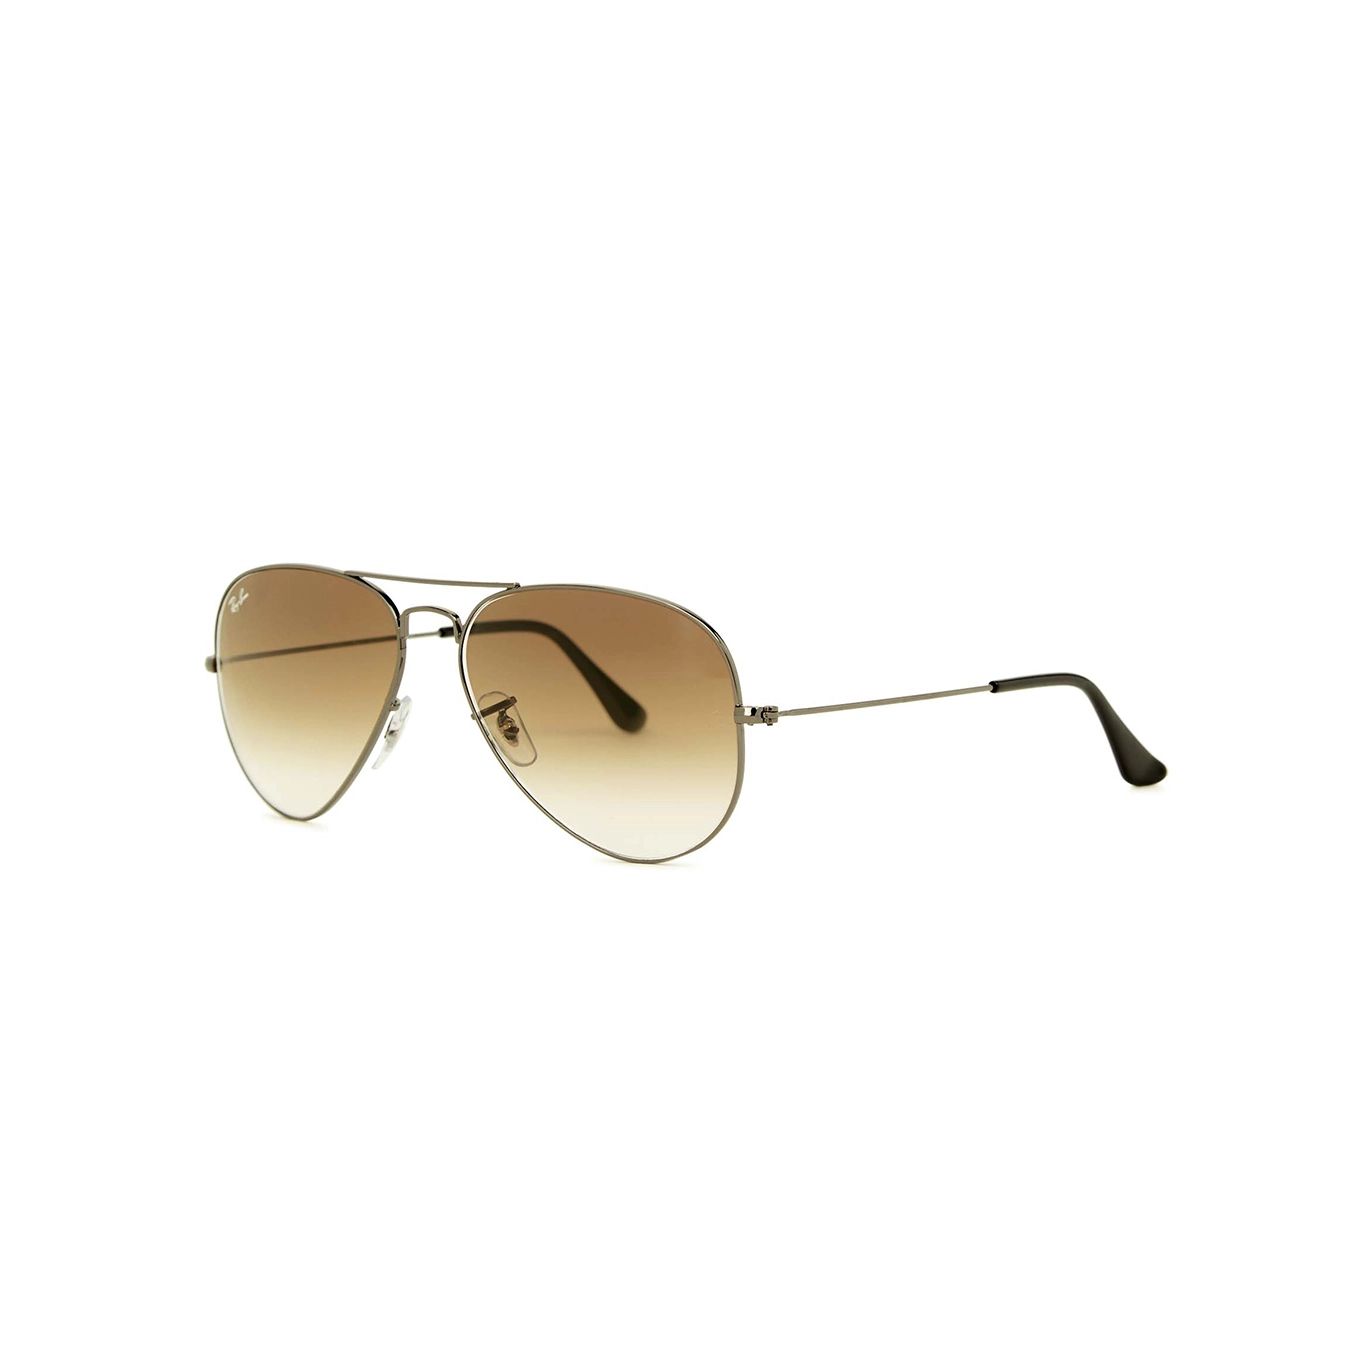 Ray-Ban Gunmetal Aviator Sunglasses, Sunglasses, Brown Lenses | Harvey Nichols (Global)